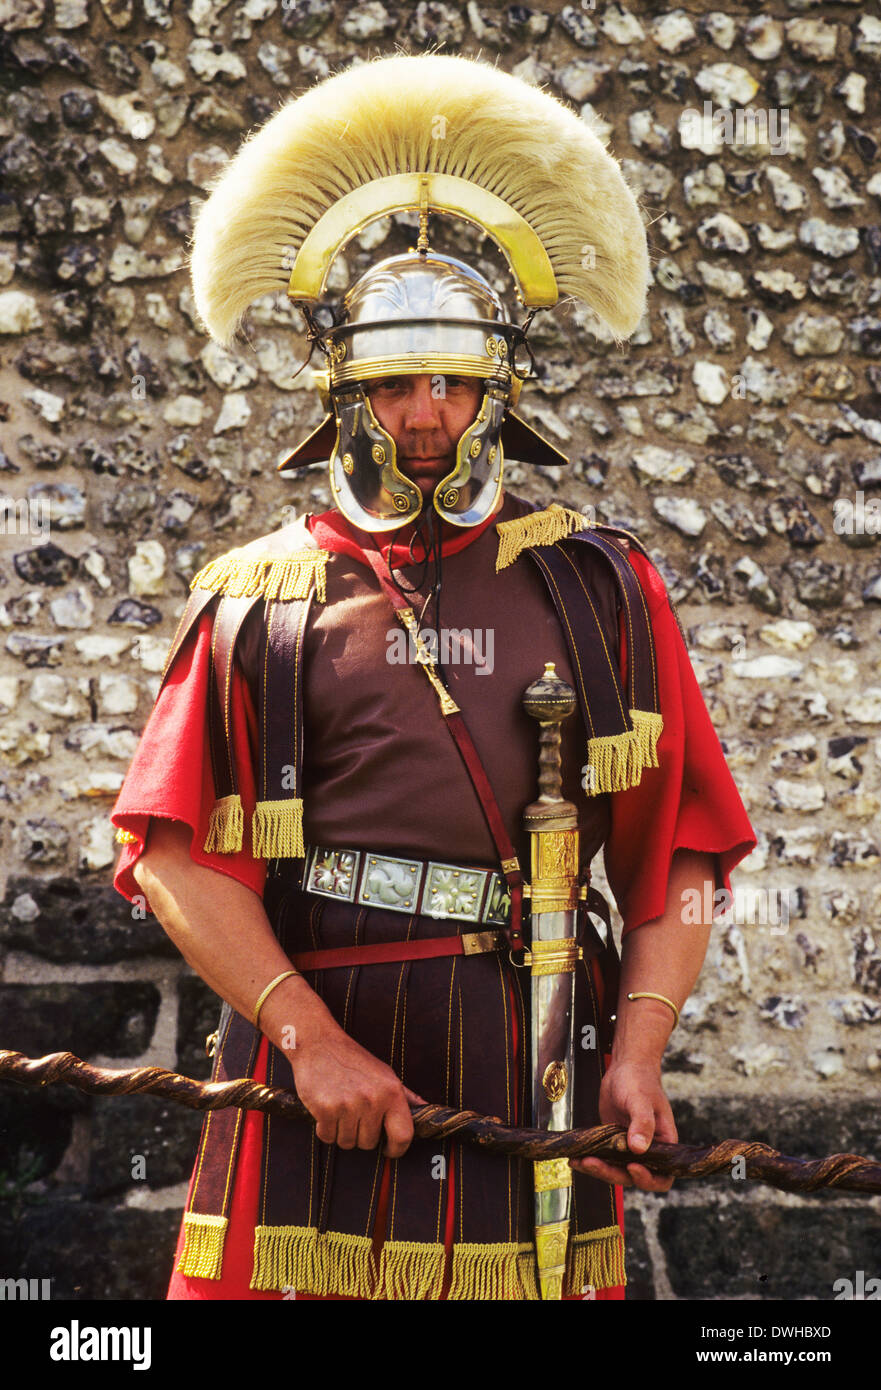 Rievocazione storica, il generale romano alto rango soldato dell'esercito di soldati, II secolo Inghilterra REGNO UNITO Foto Stock